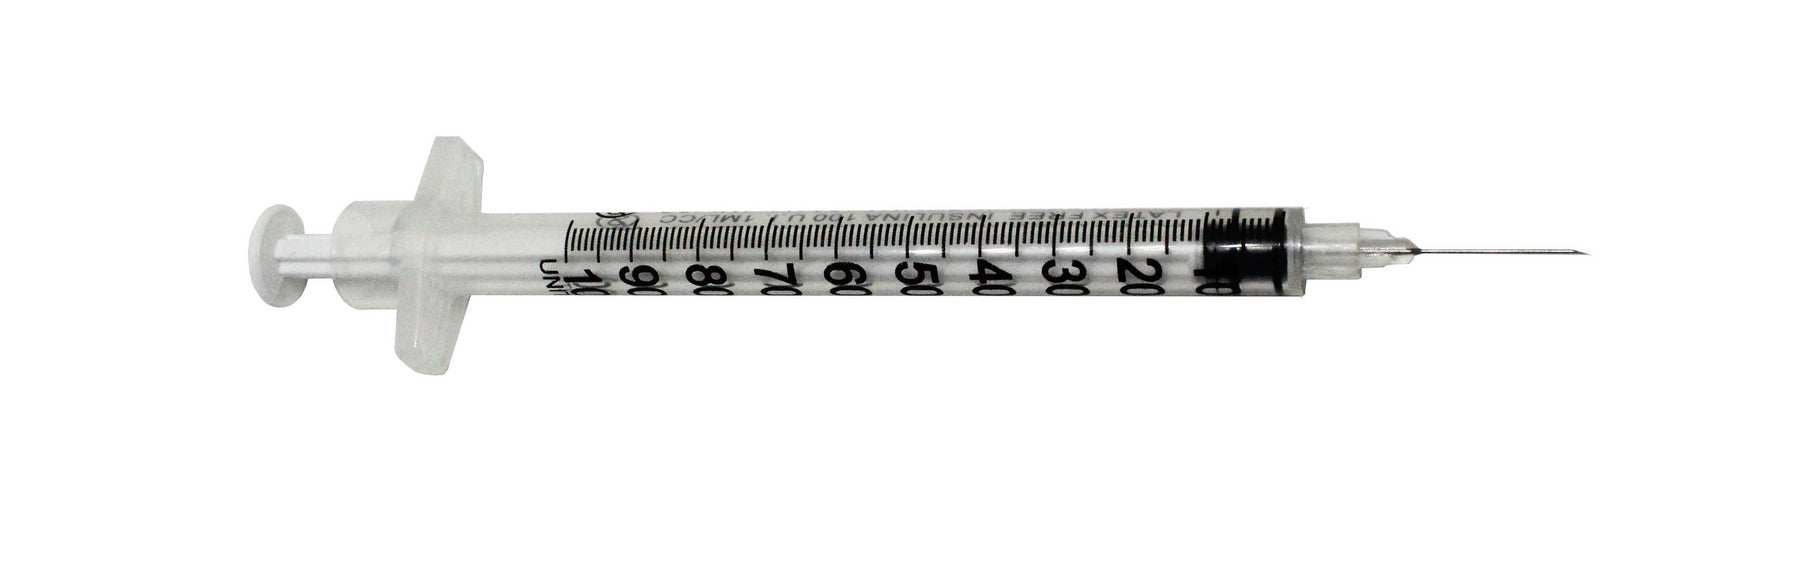 1ml insulin syringe u100 29g x 13mm hypodermic needle